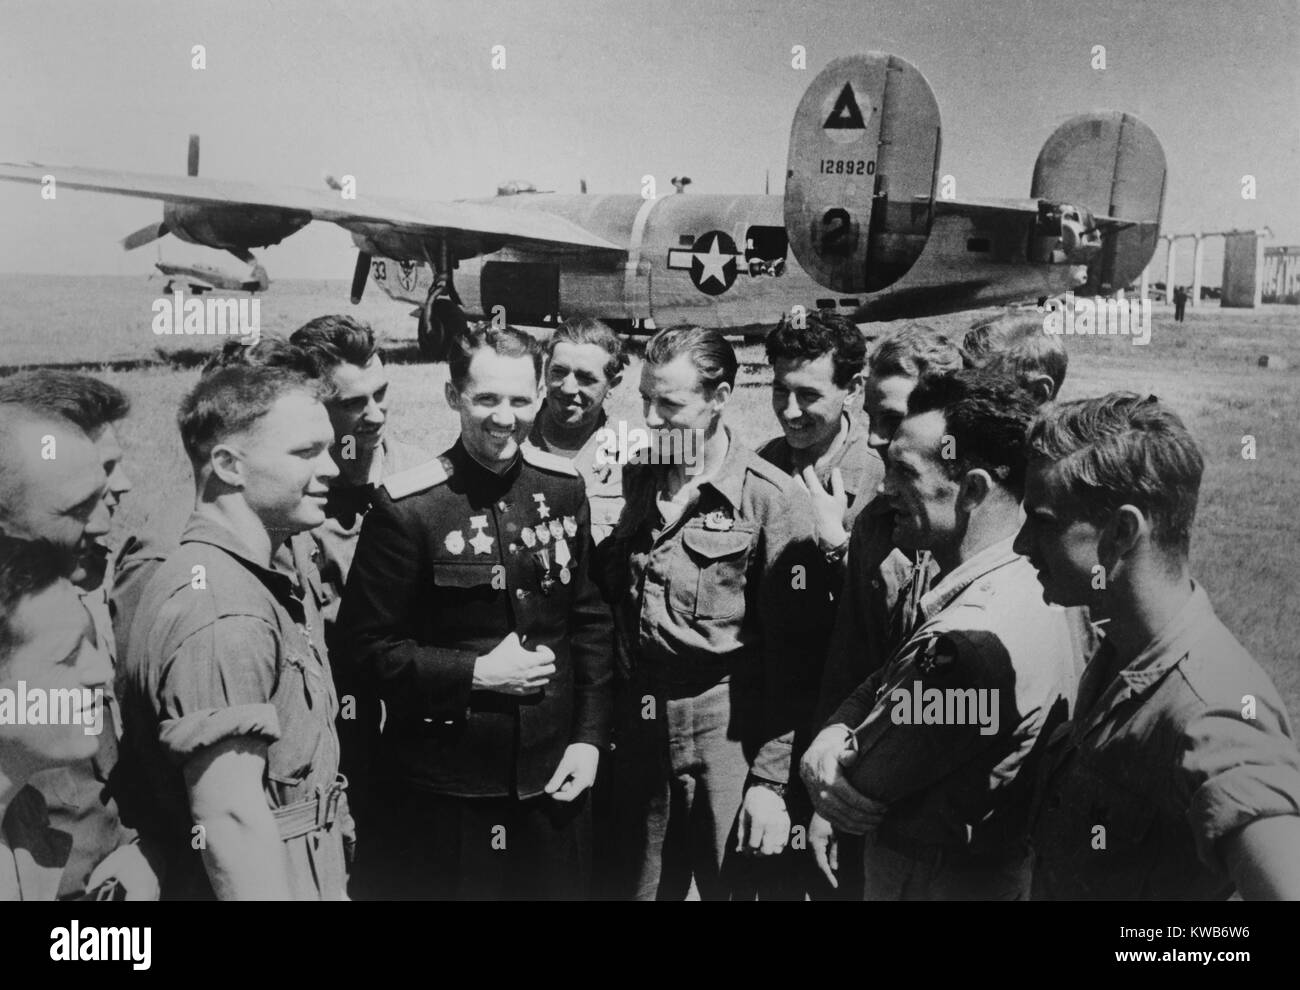 Soviet (Russo) Guerra Mondiale 2 ace Mikhail Avdeev con piloti americani. In fondo è una consolidata B-24 Liberator bombardiere, a Sevastopol, Ucraina, 1944. Foto di Evgeni Khaldei. (BSLOC 2014 8 54) Foto Stock